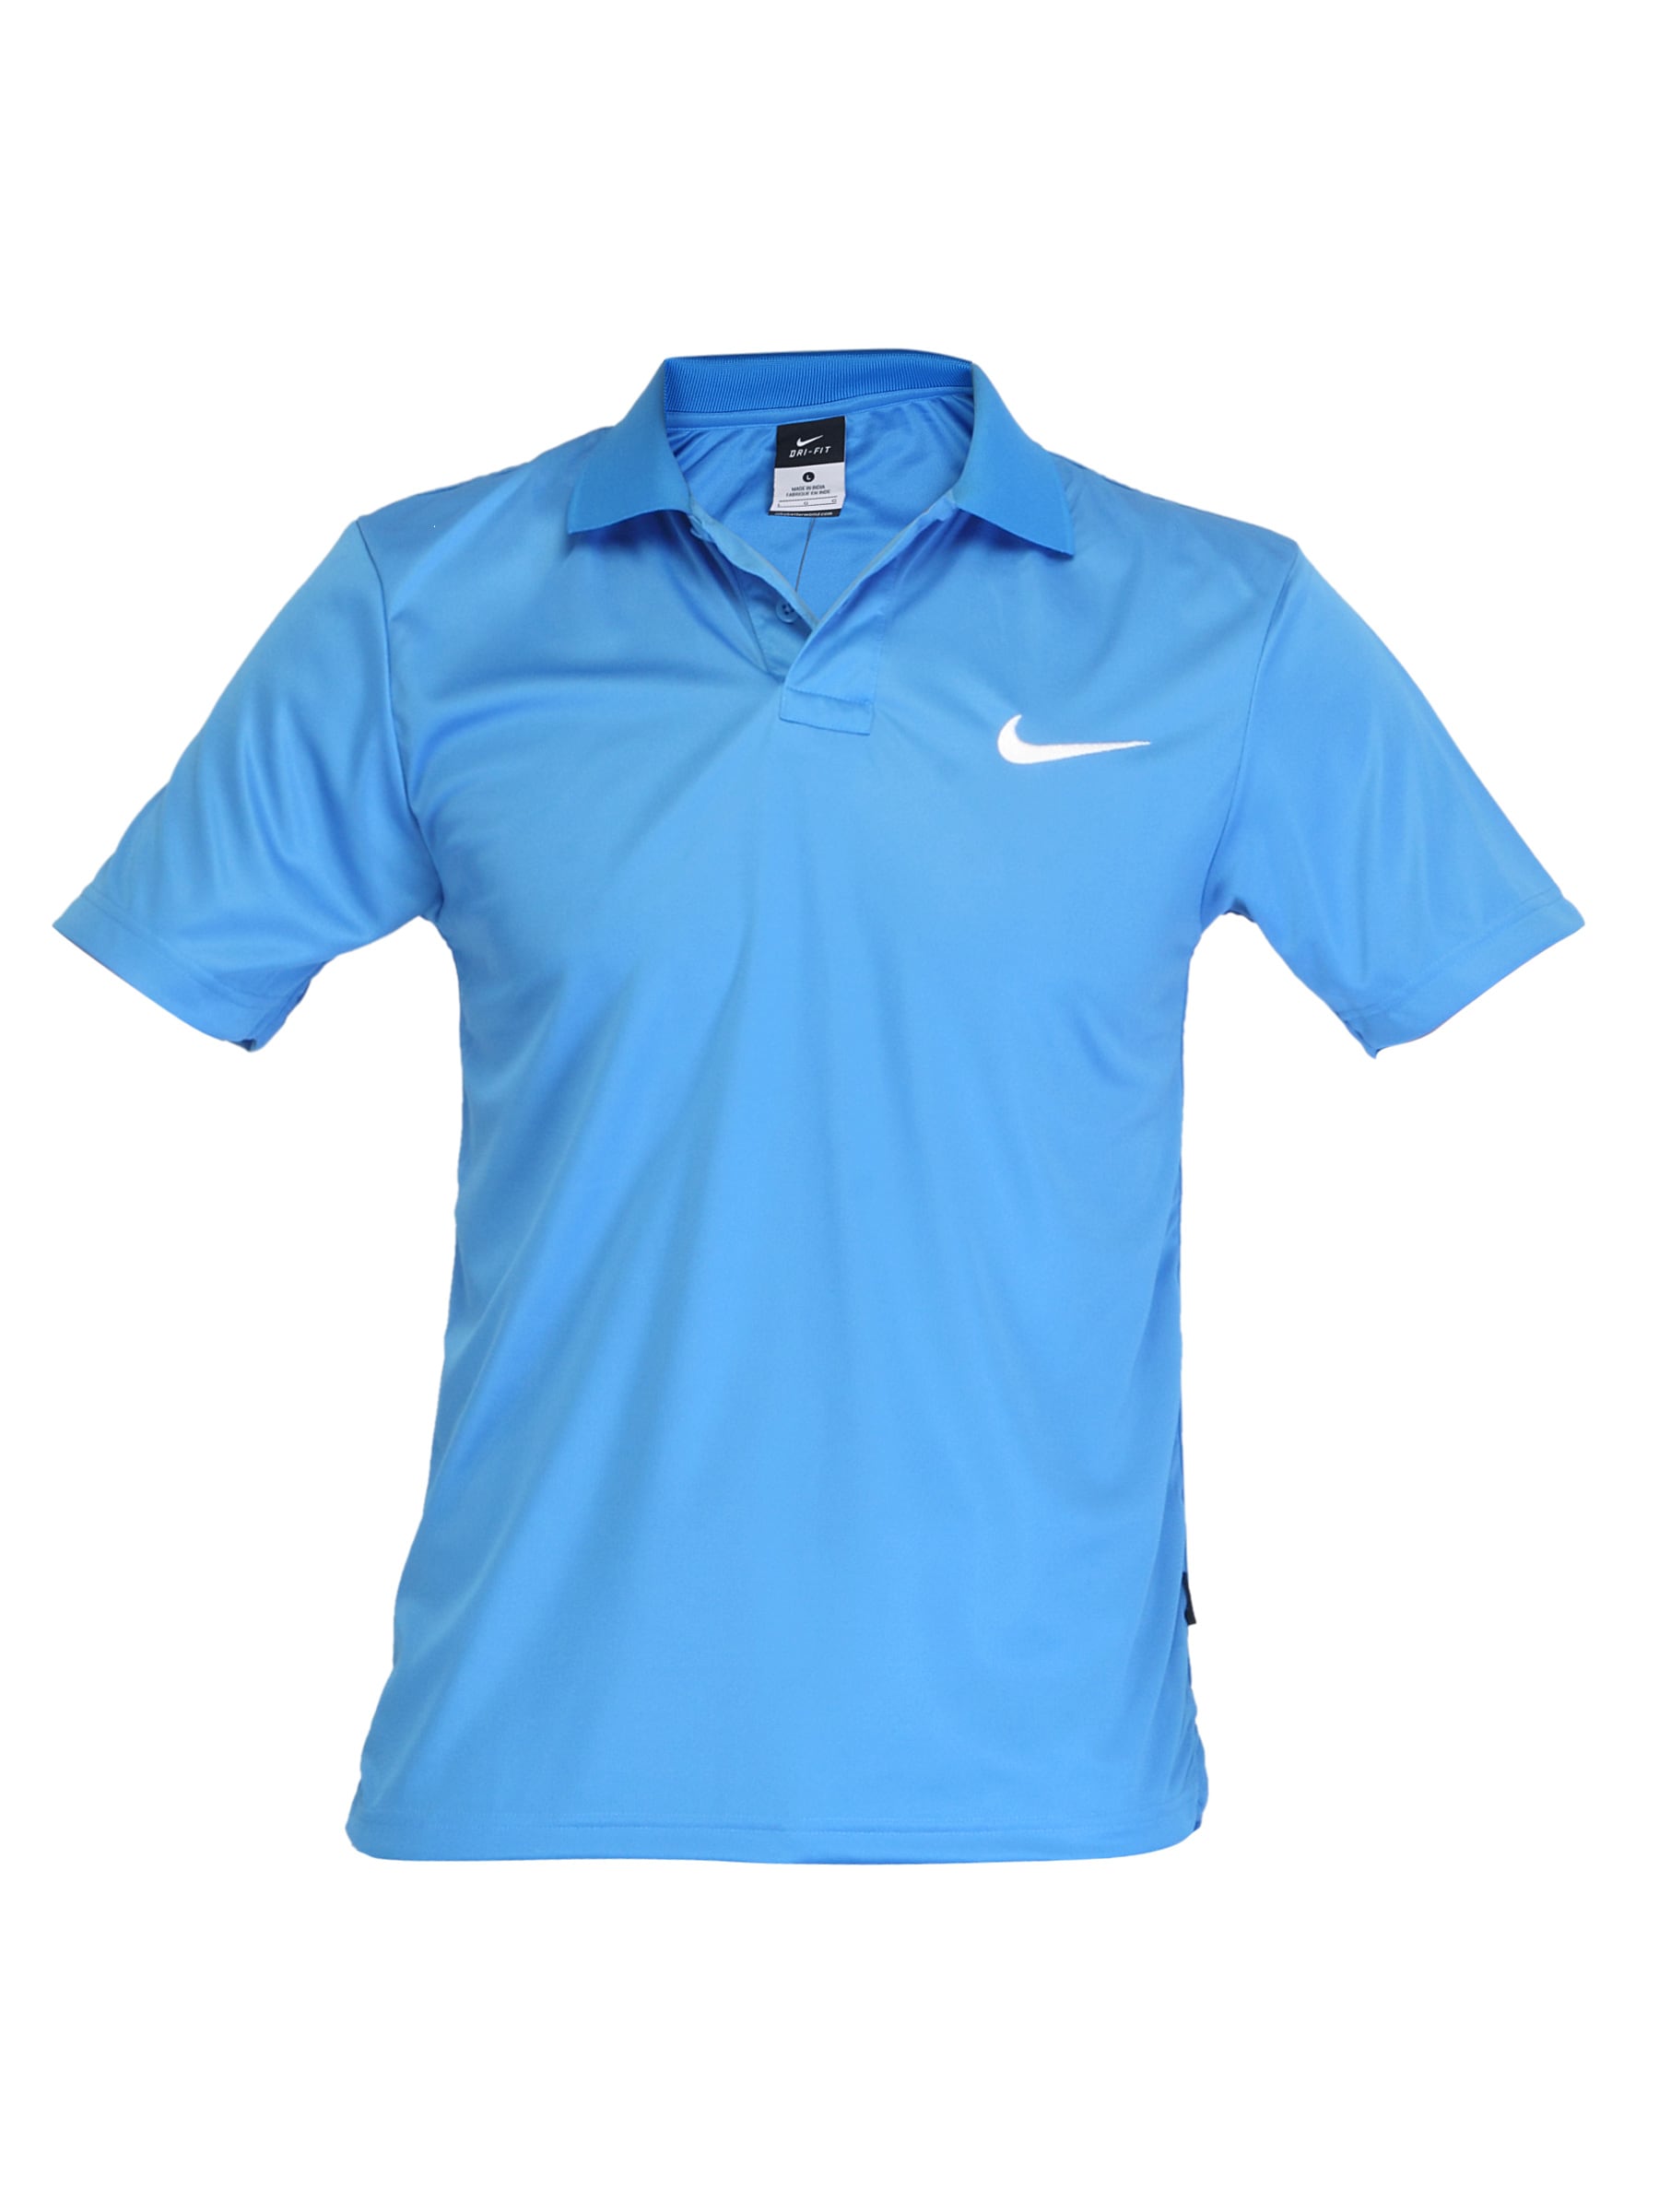 Nike Men Media Blue Polo T-shirt